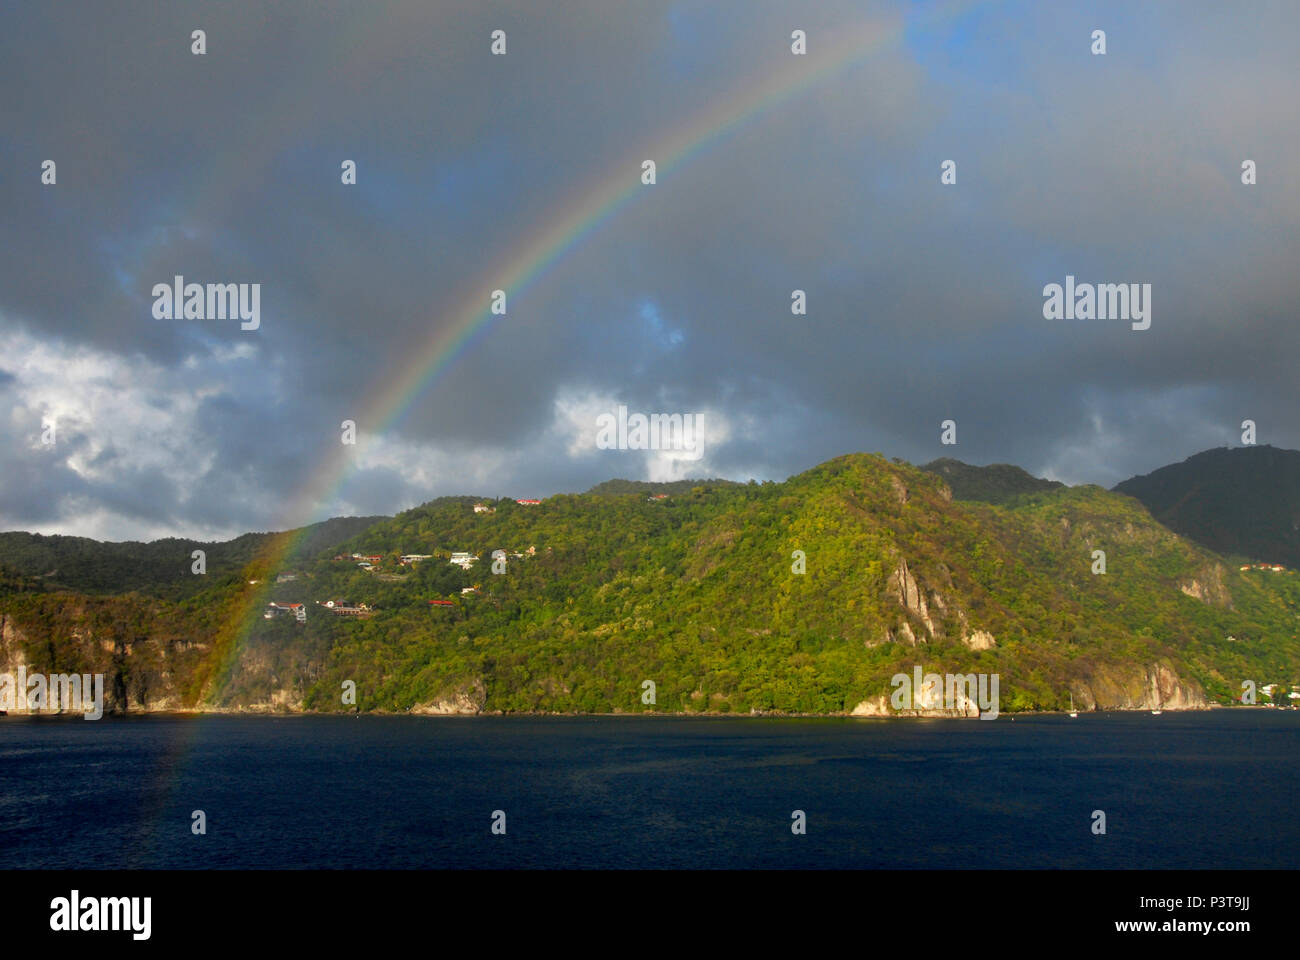 Doppio arcobaleno su St Lucia, Caraibi, viste dal mare Foto Stock